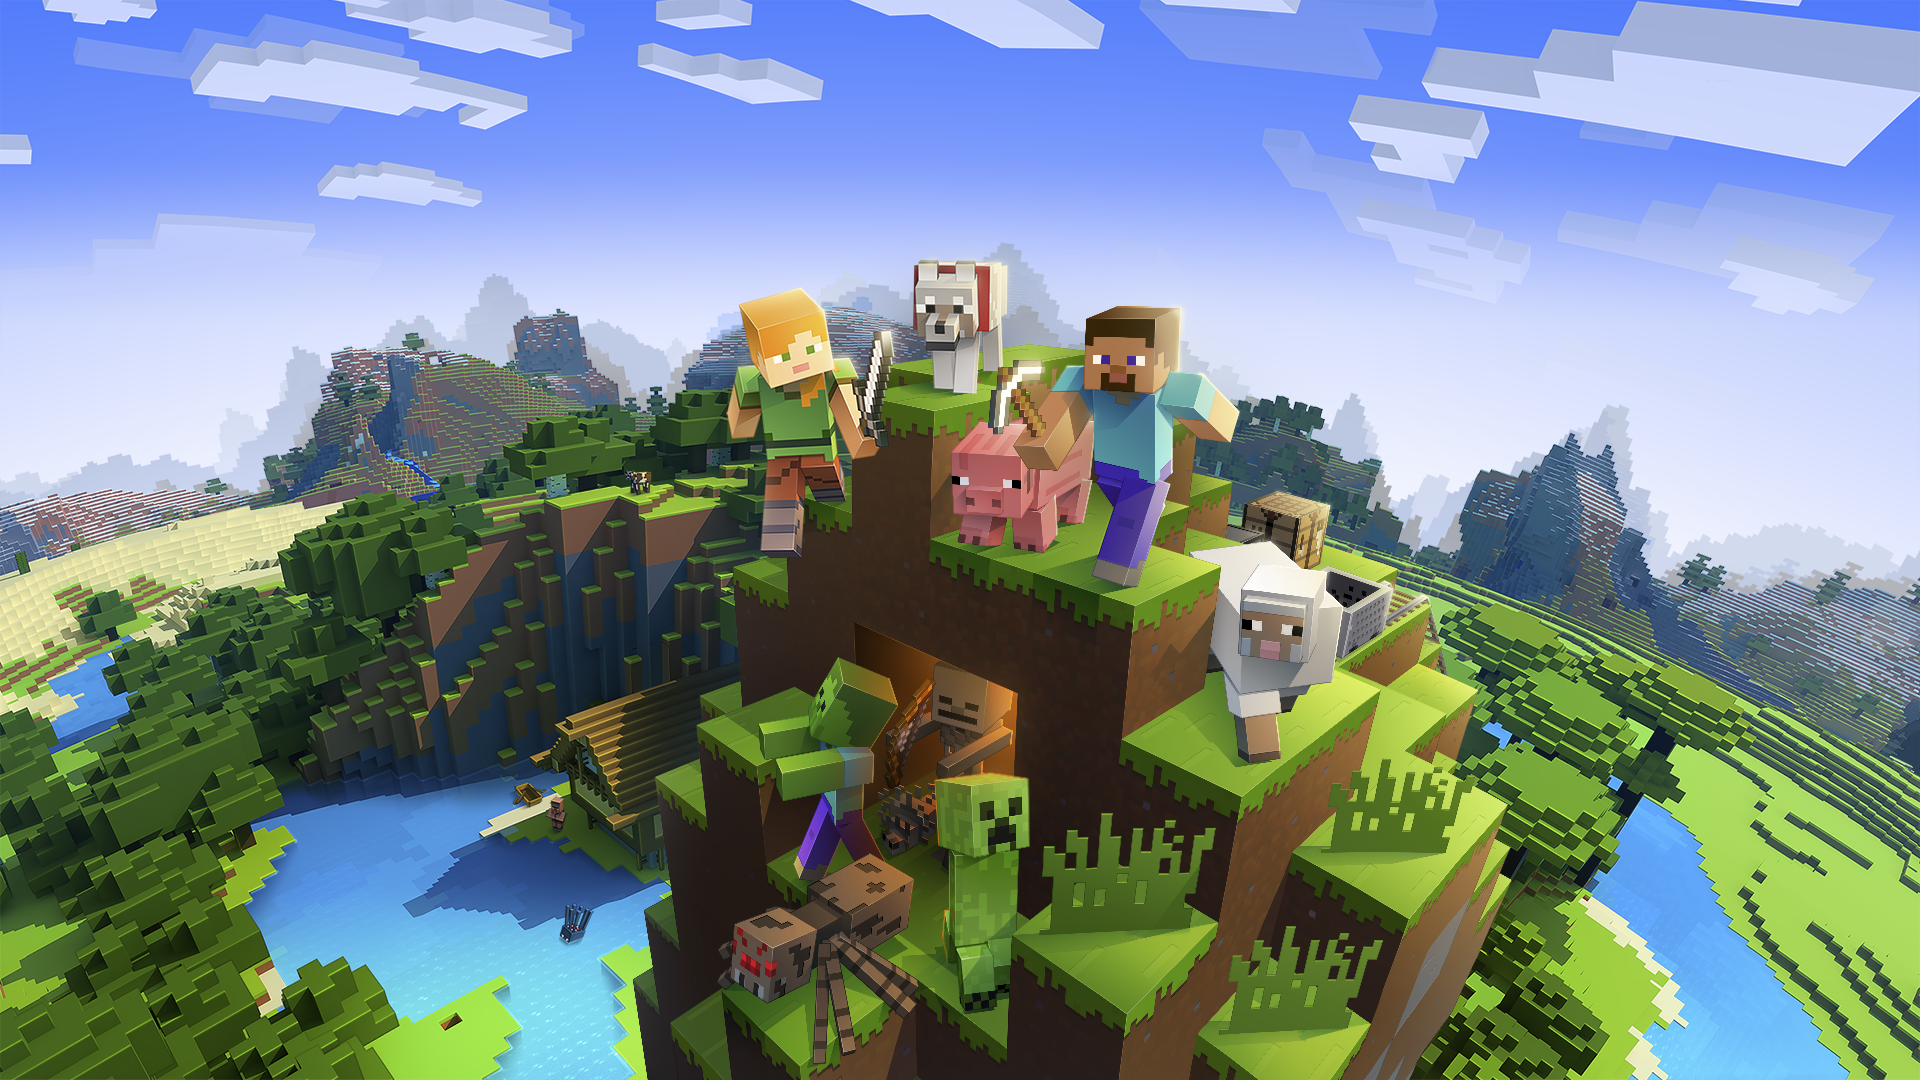 Illustrasjonsbilde av spillet Minecraft, hvor man kan se noen spillere, monstre, og dyr man møter i spillet